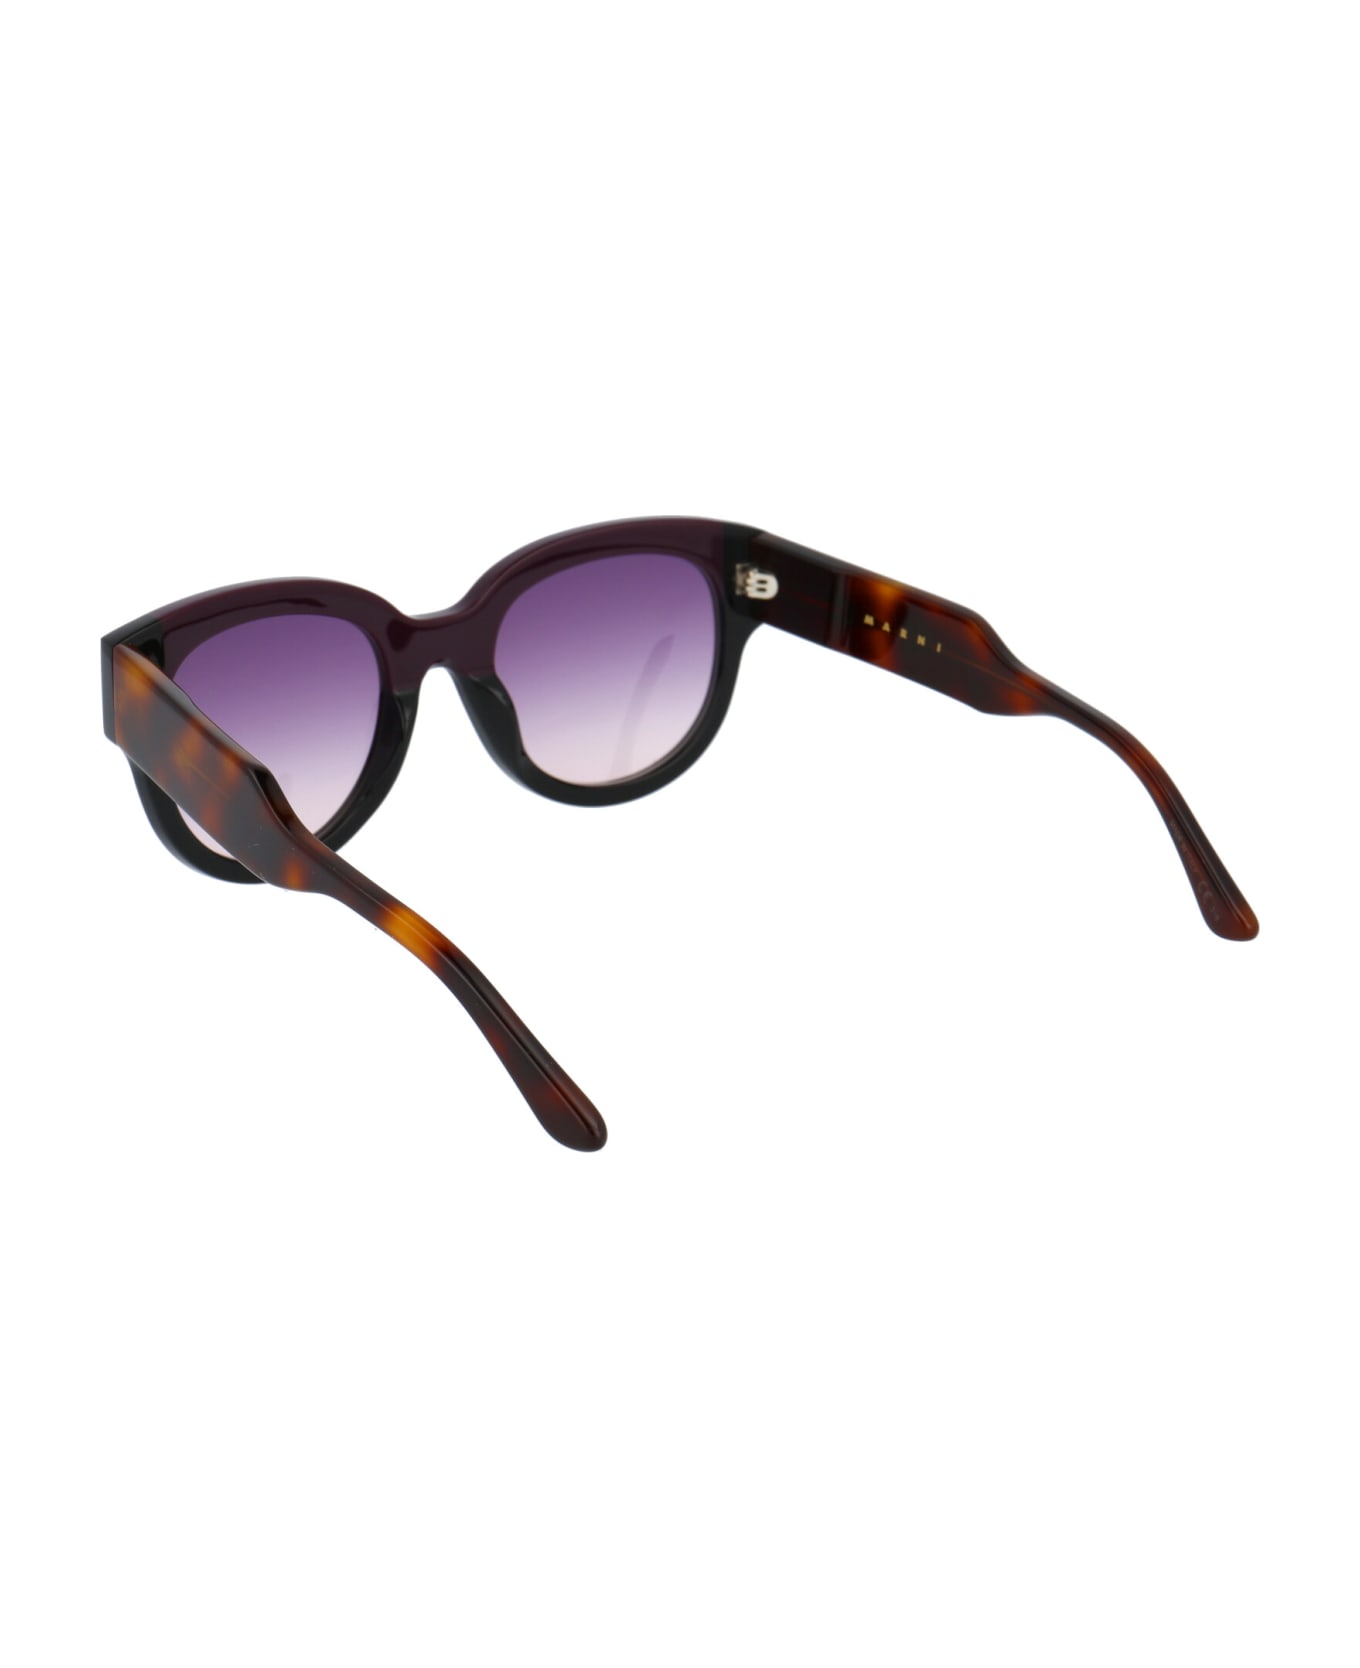 Marni Eyewear Me600s Sunglasses - 600 WINE BLACK サングラス